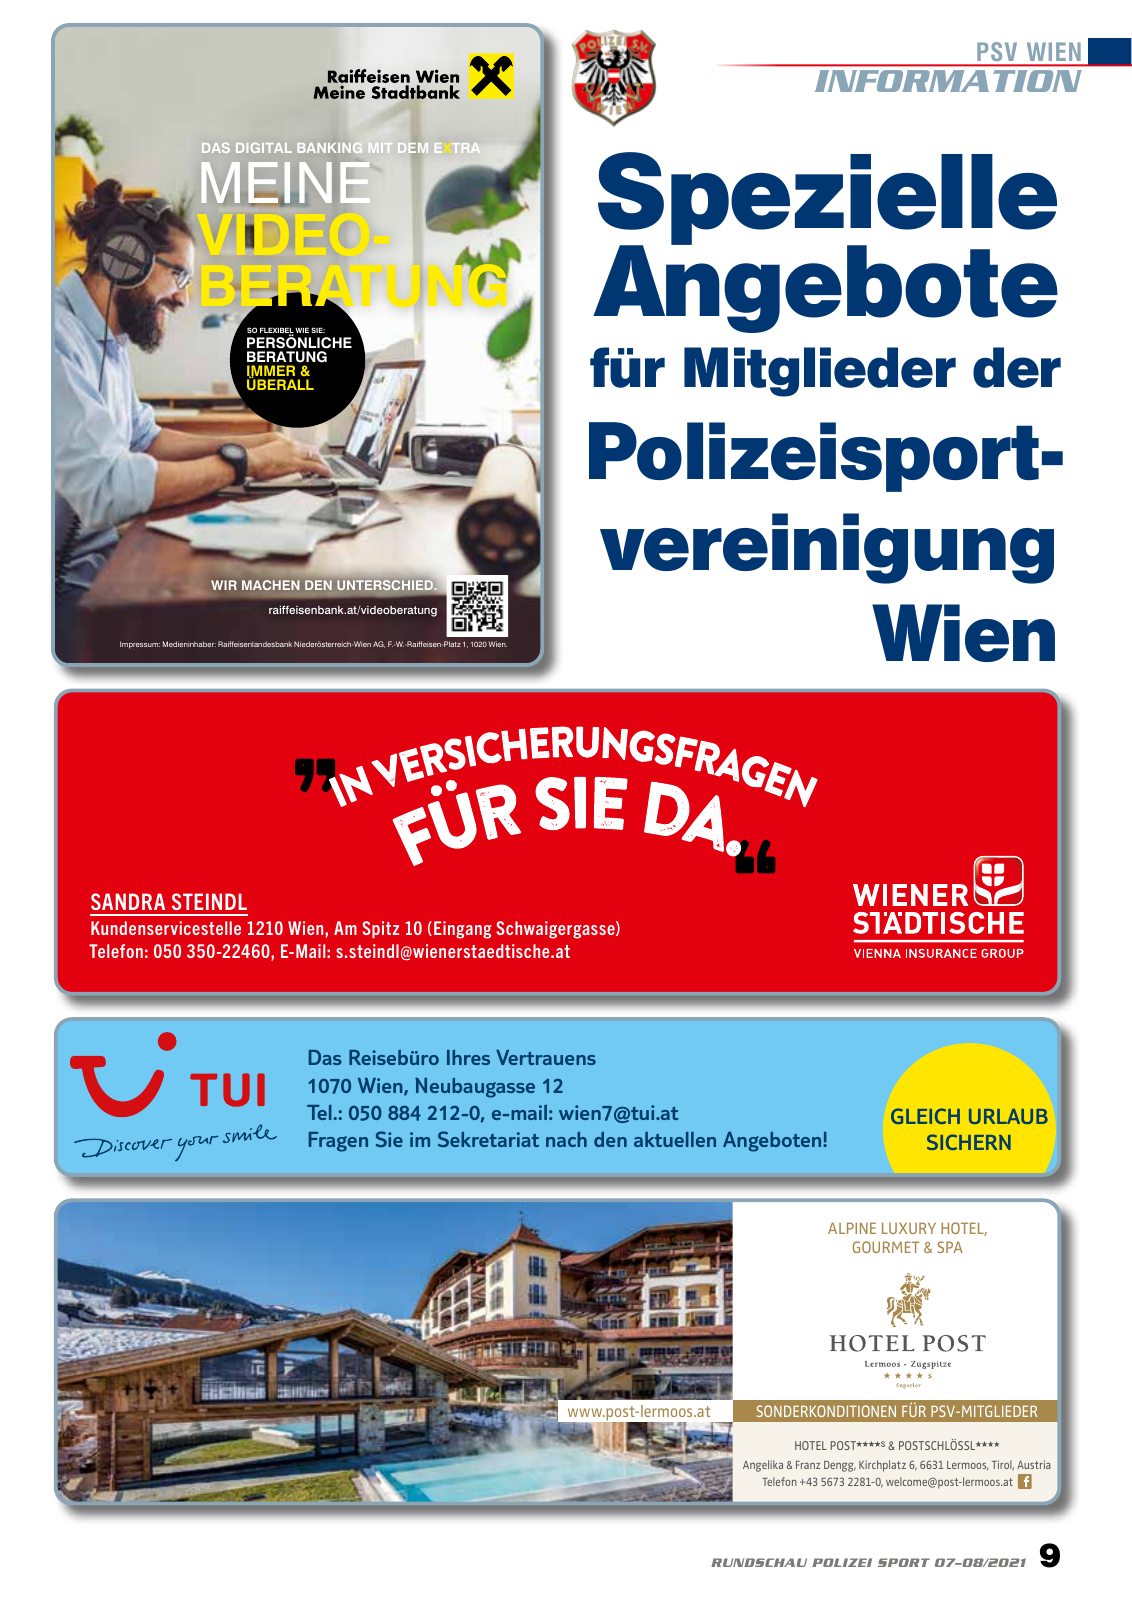 Vorschau Rundschau Polizei Sport 07-08/2021 Seite 9